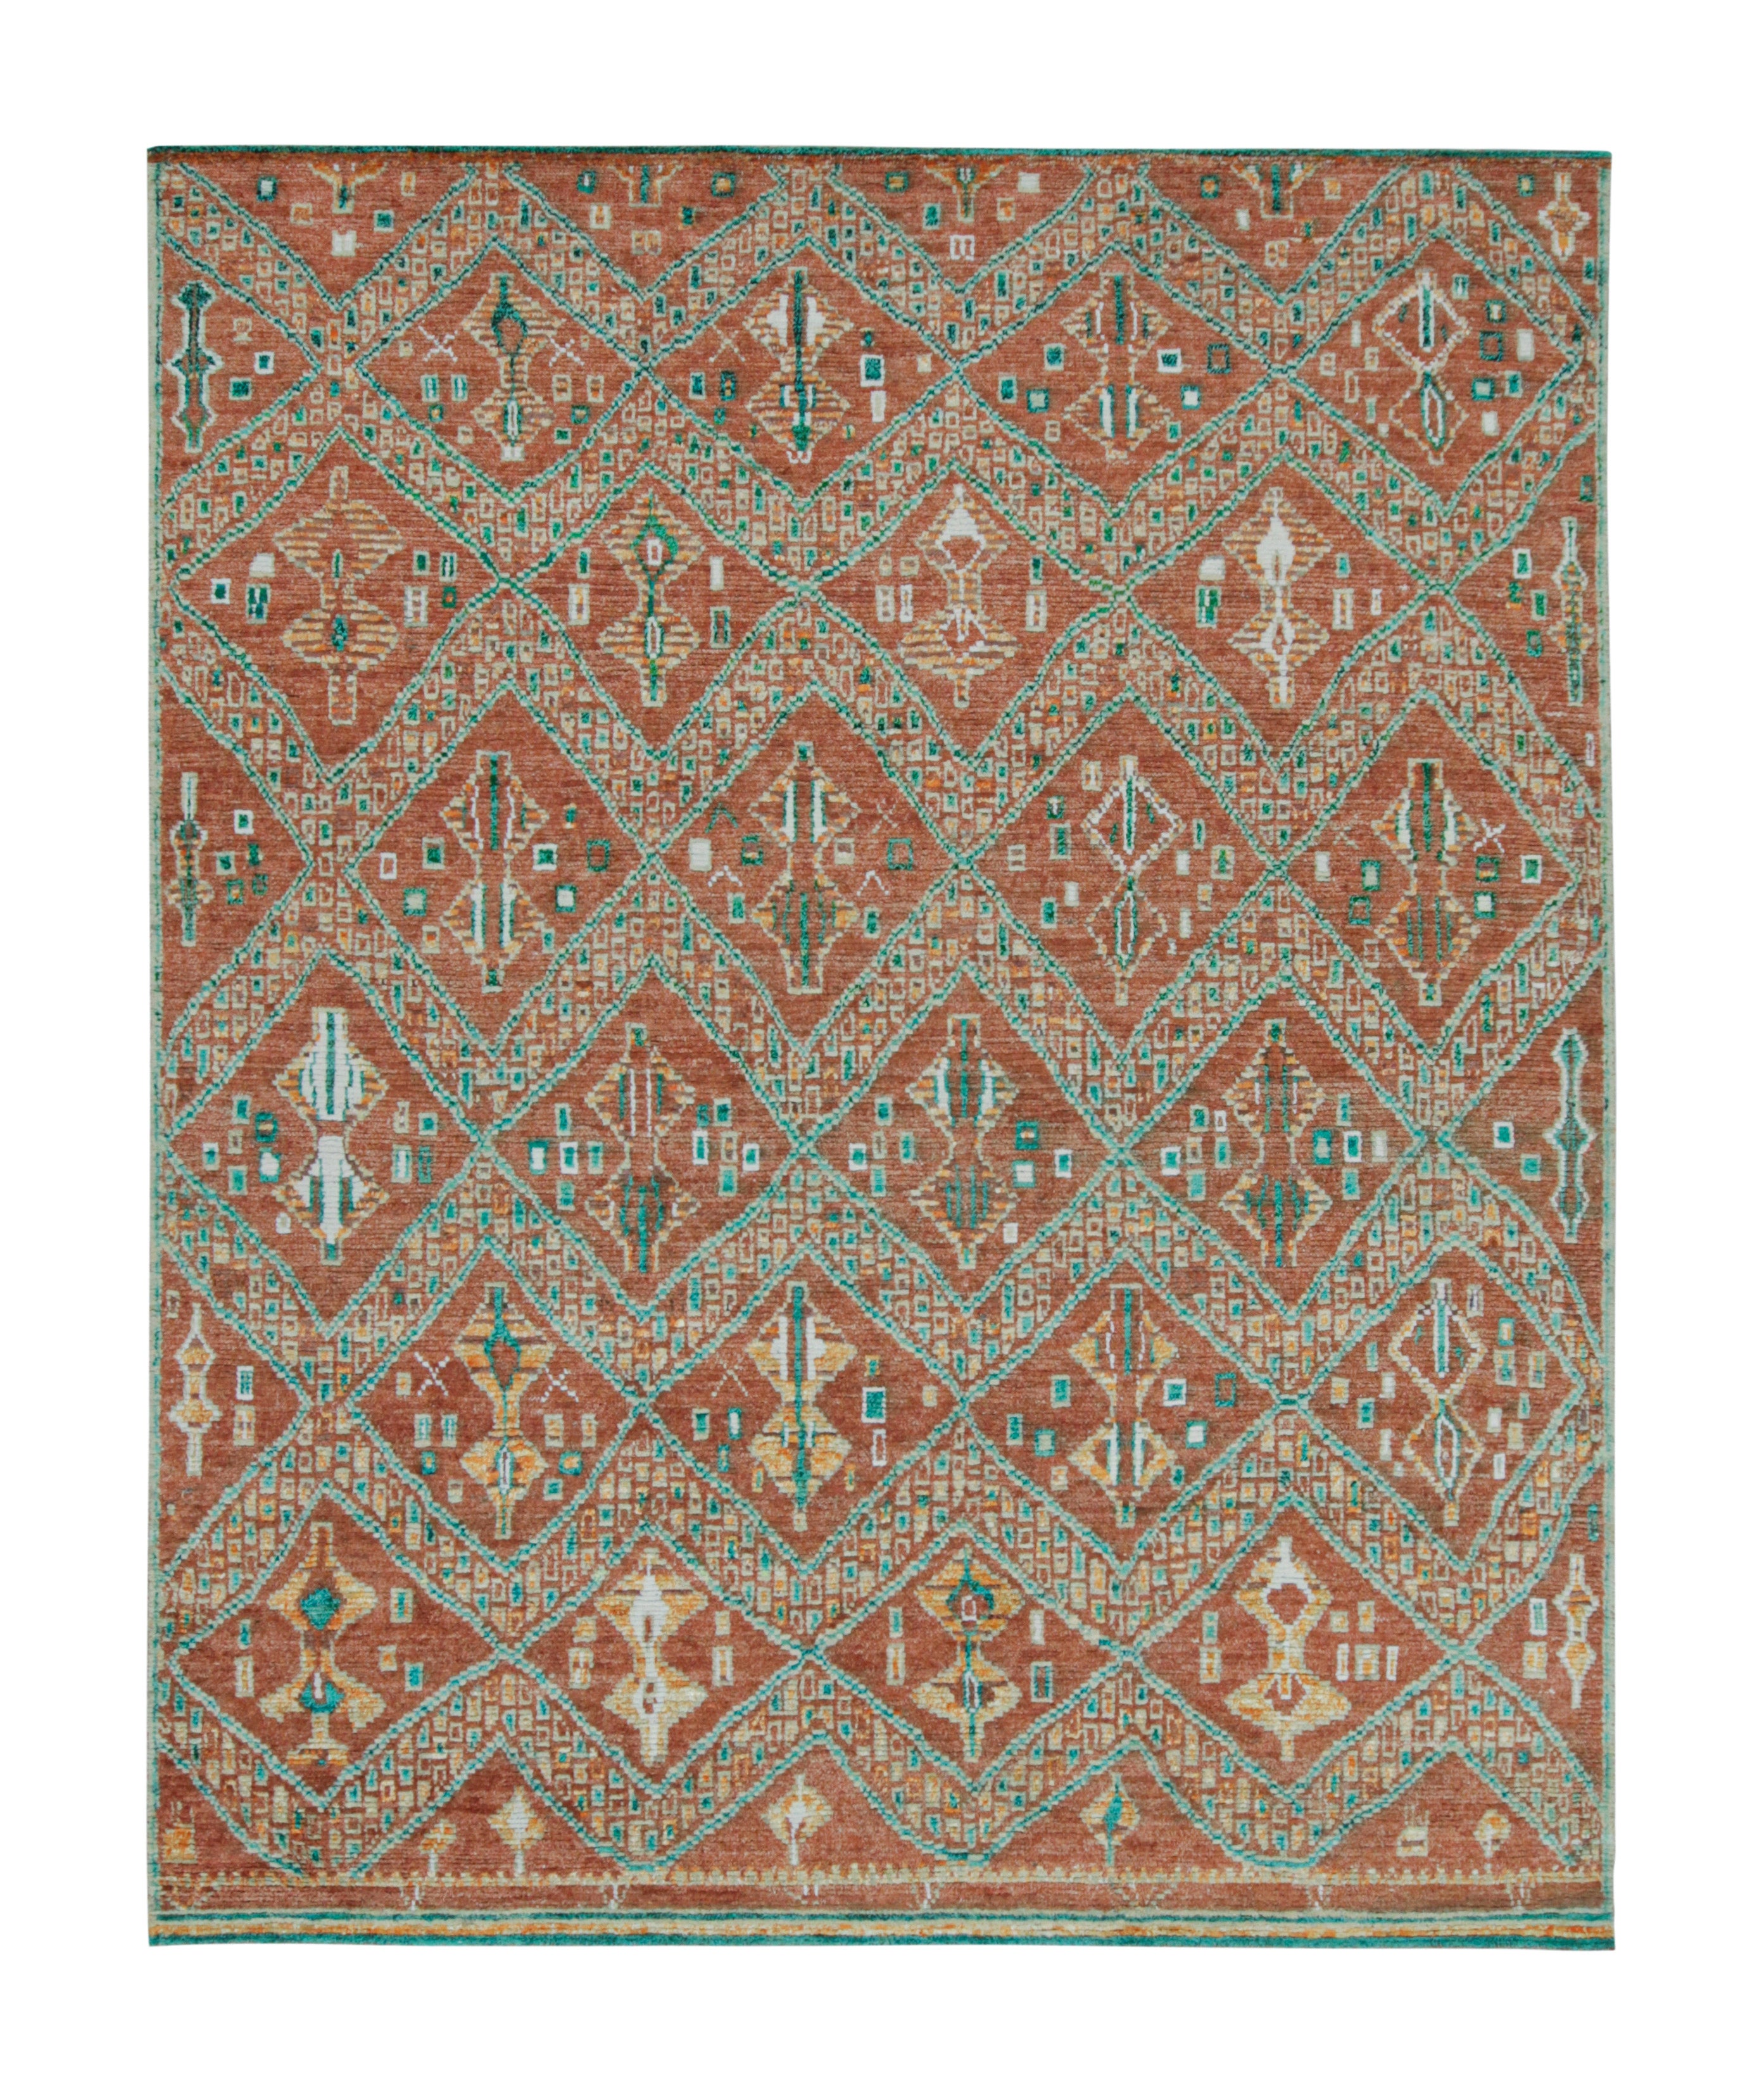 Tapis et tapis de style marocain de Kilim à motif géométrique rouge rouille et vert